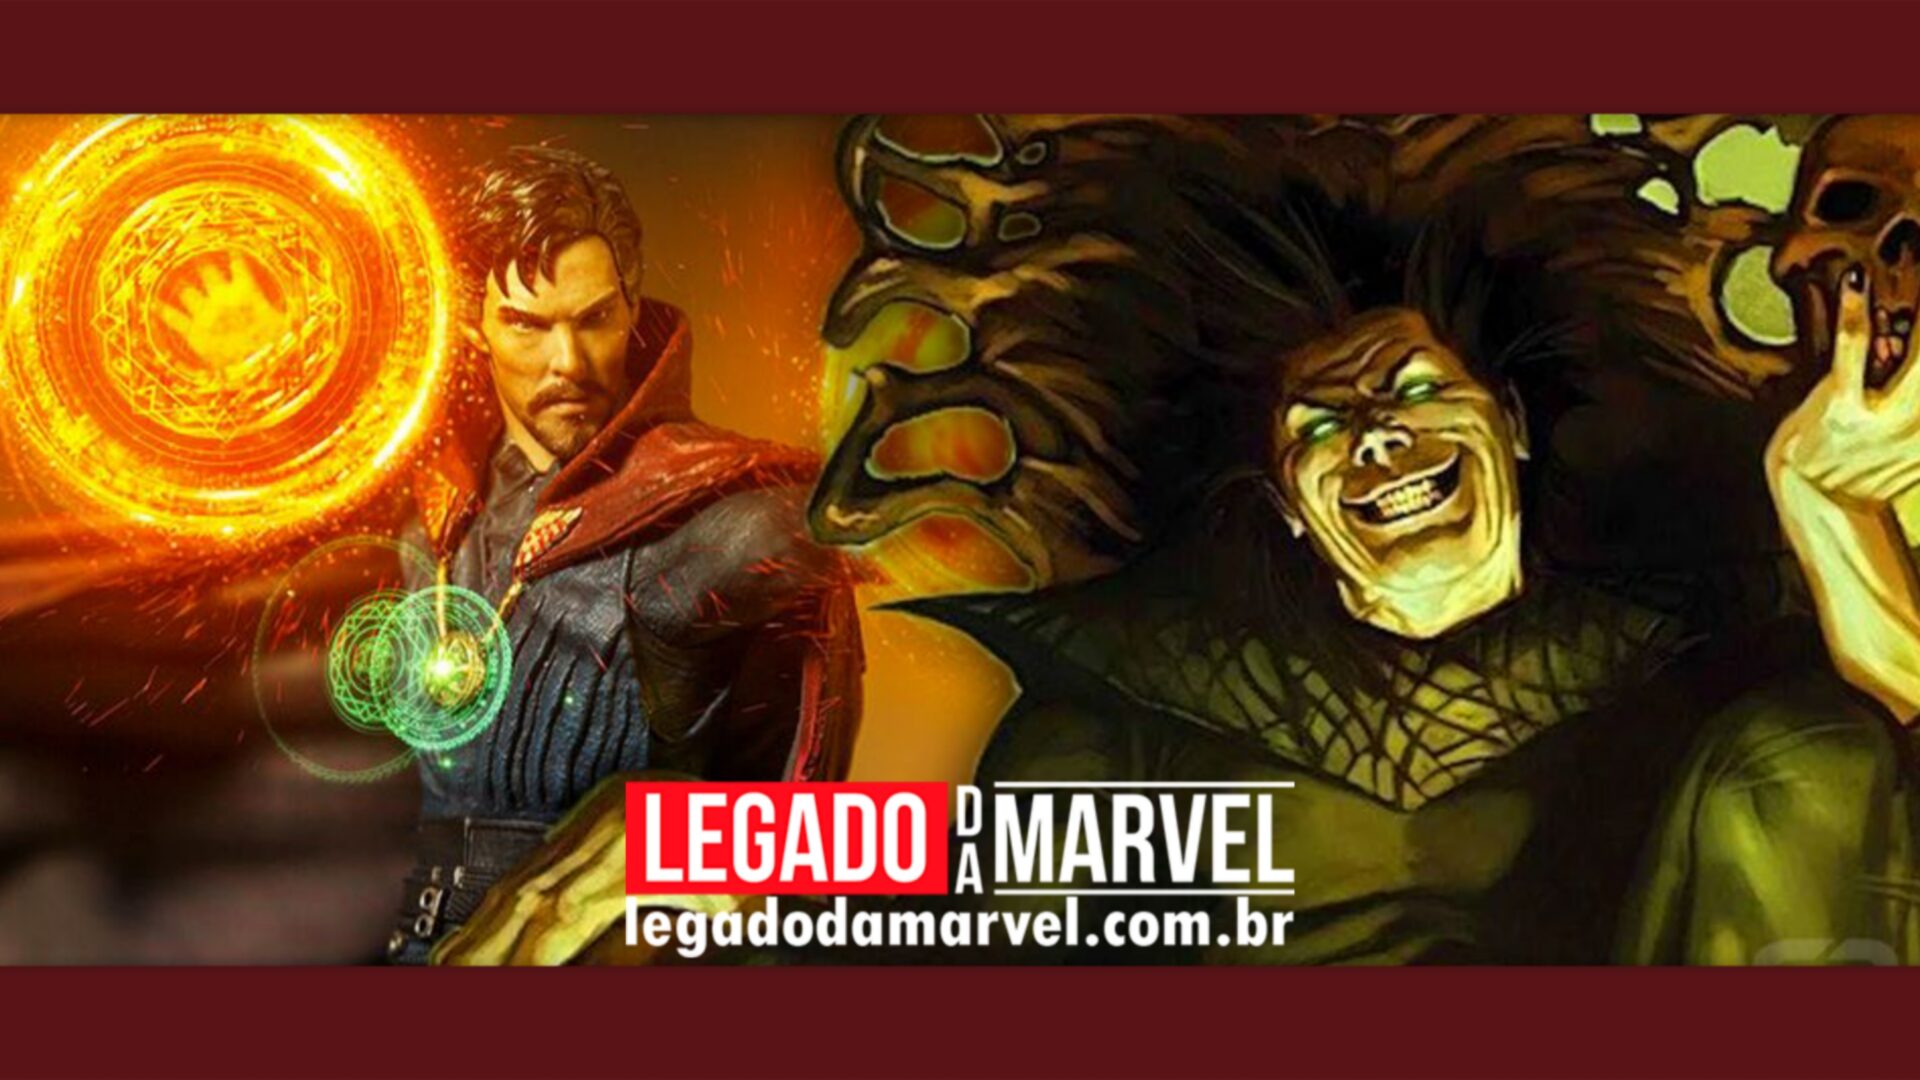 Doutor Estranho possui um dos vilões mais poderosos da Marvel